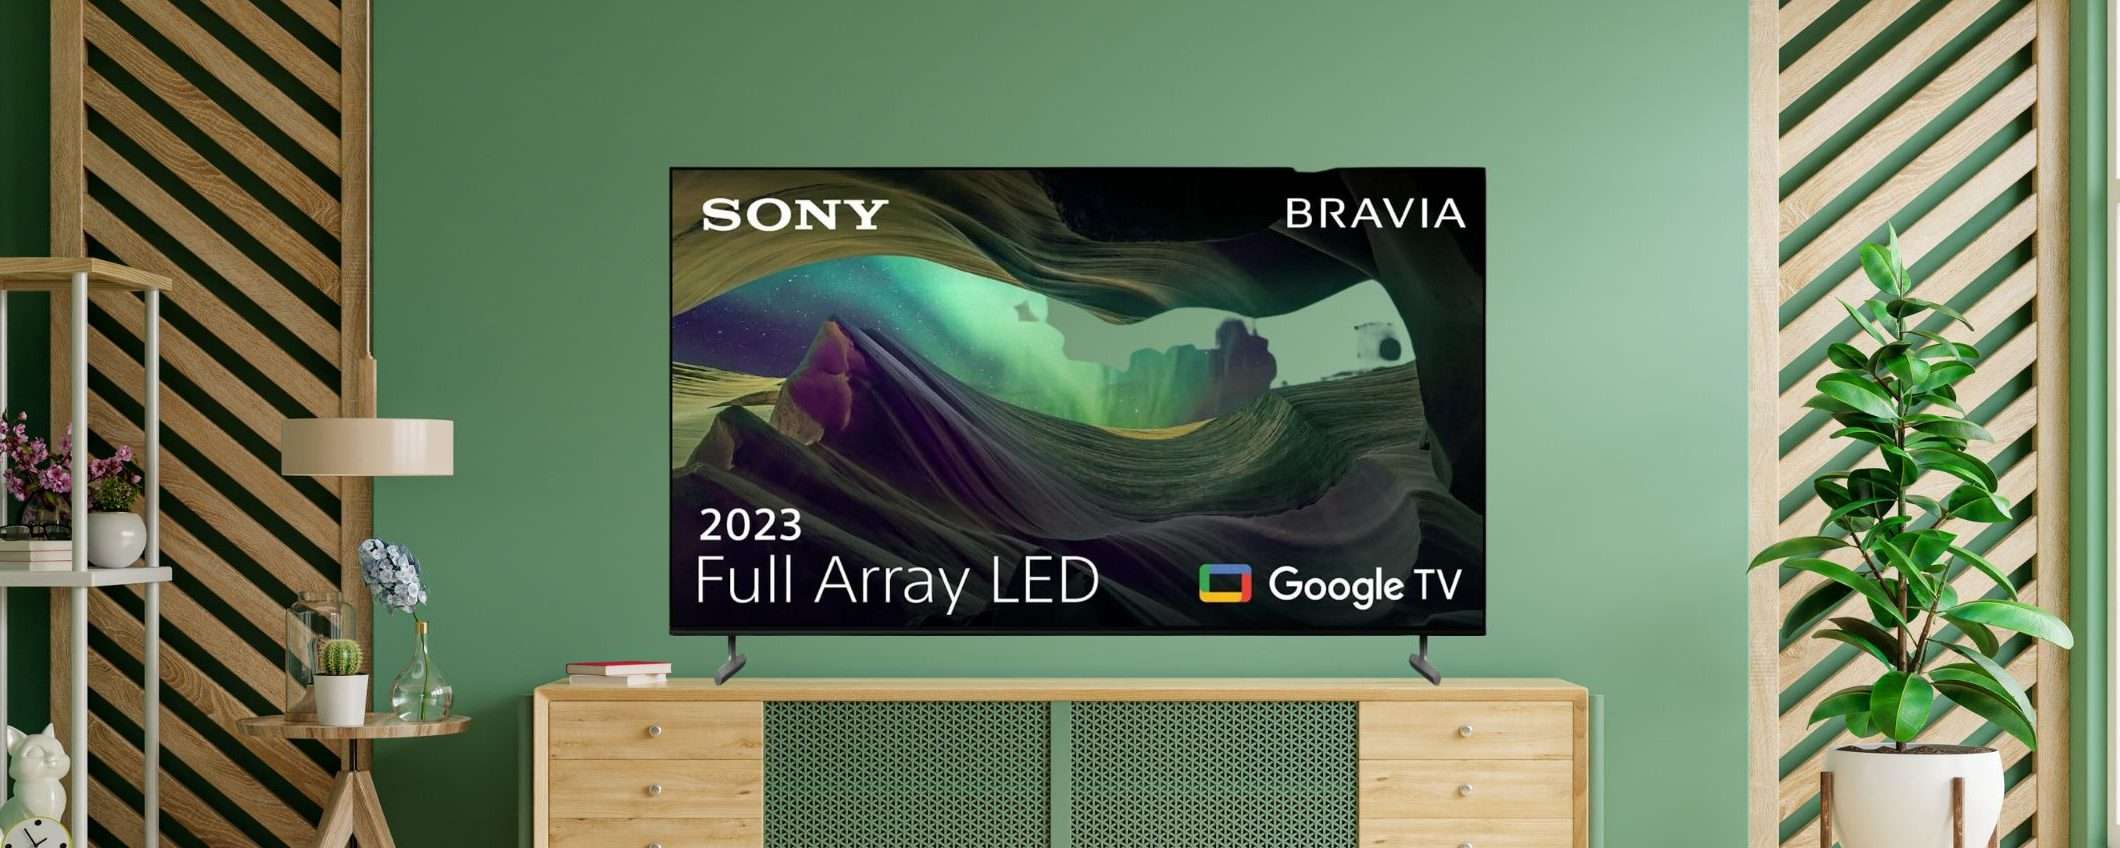 Smart Tv Sony Bravia 65 4k Che Occasione Mega Sconto Su Amazon 500€ 3806